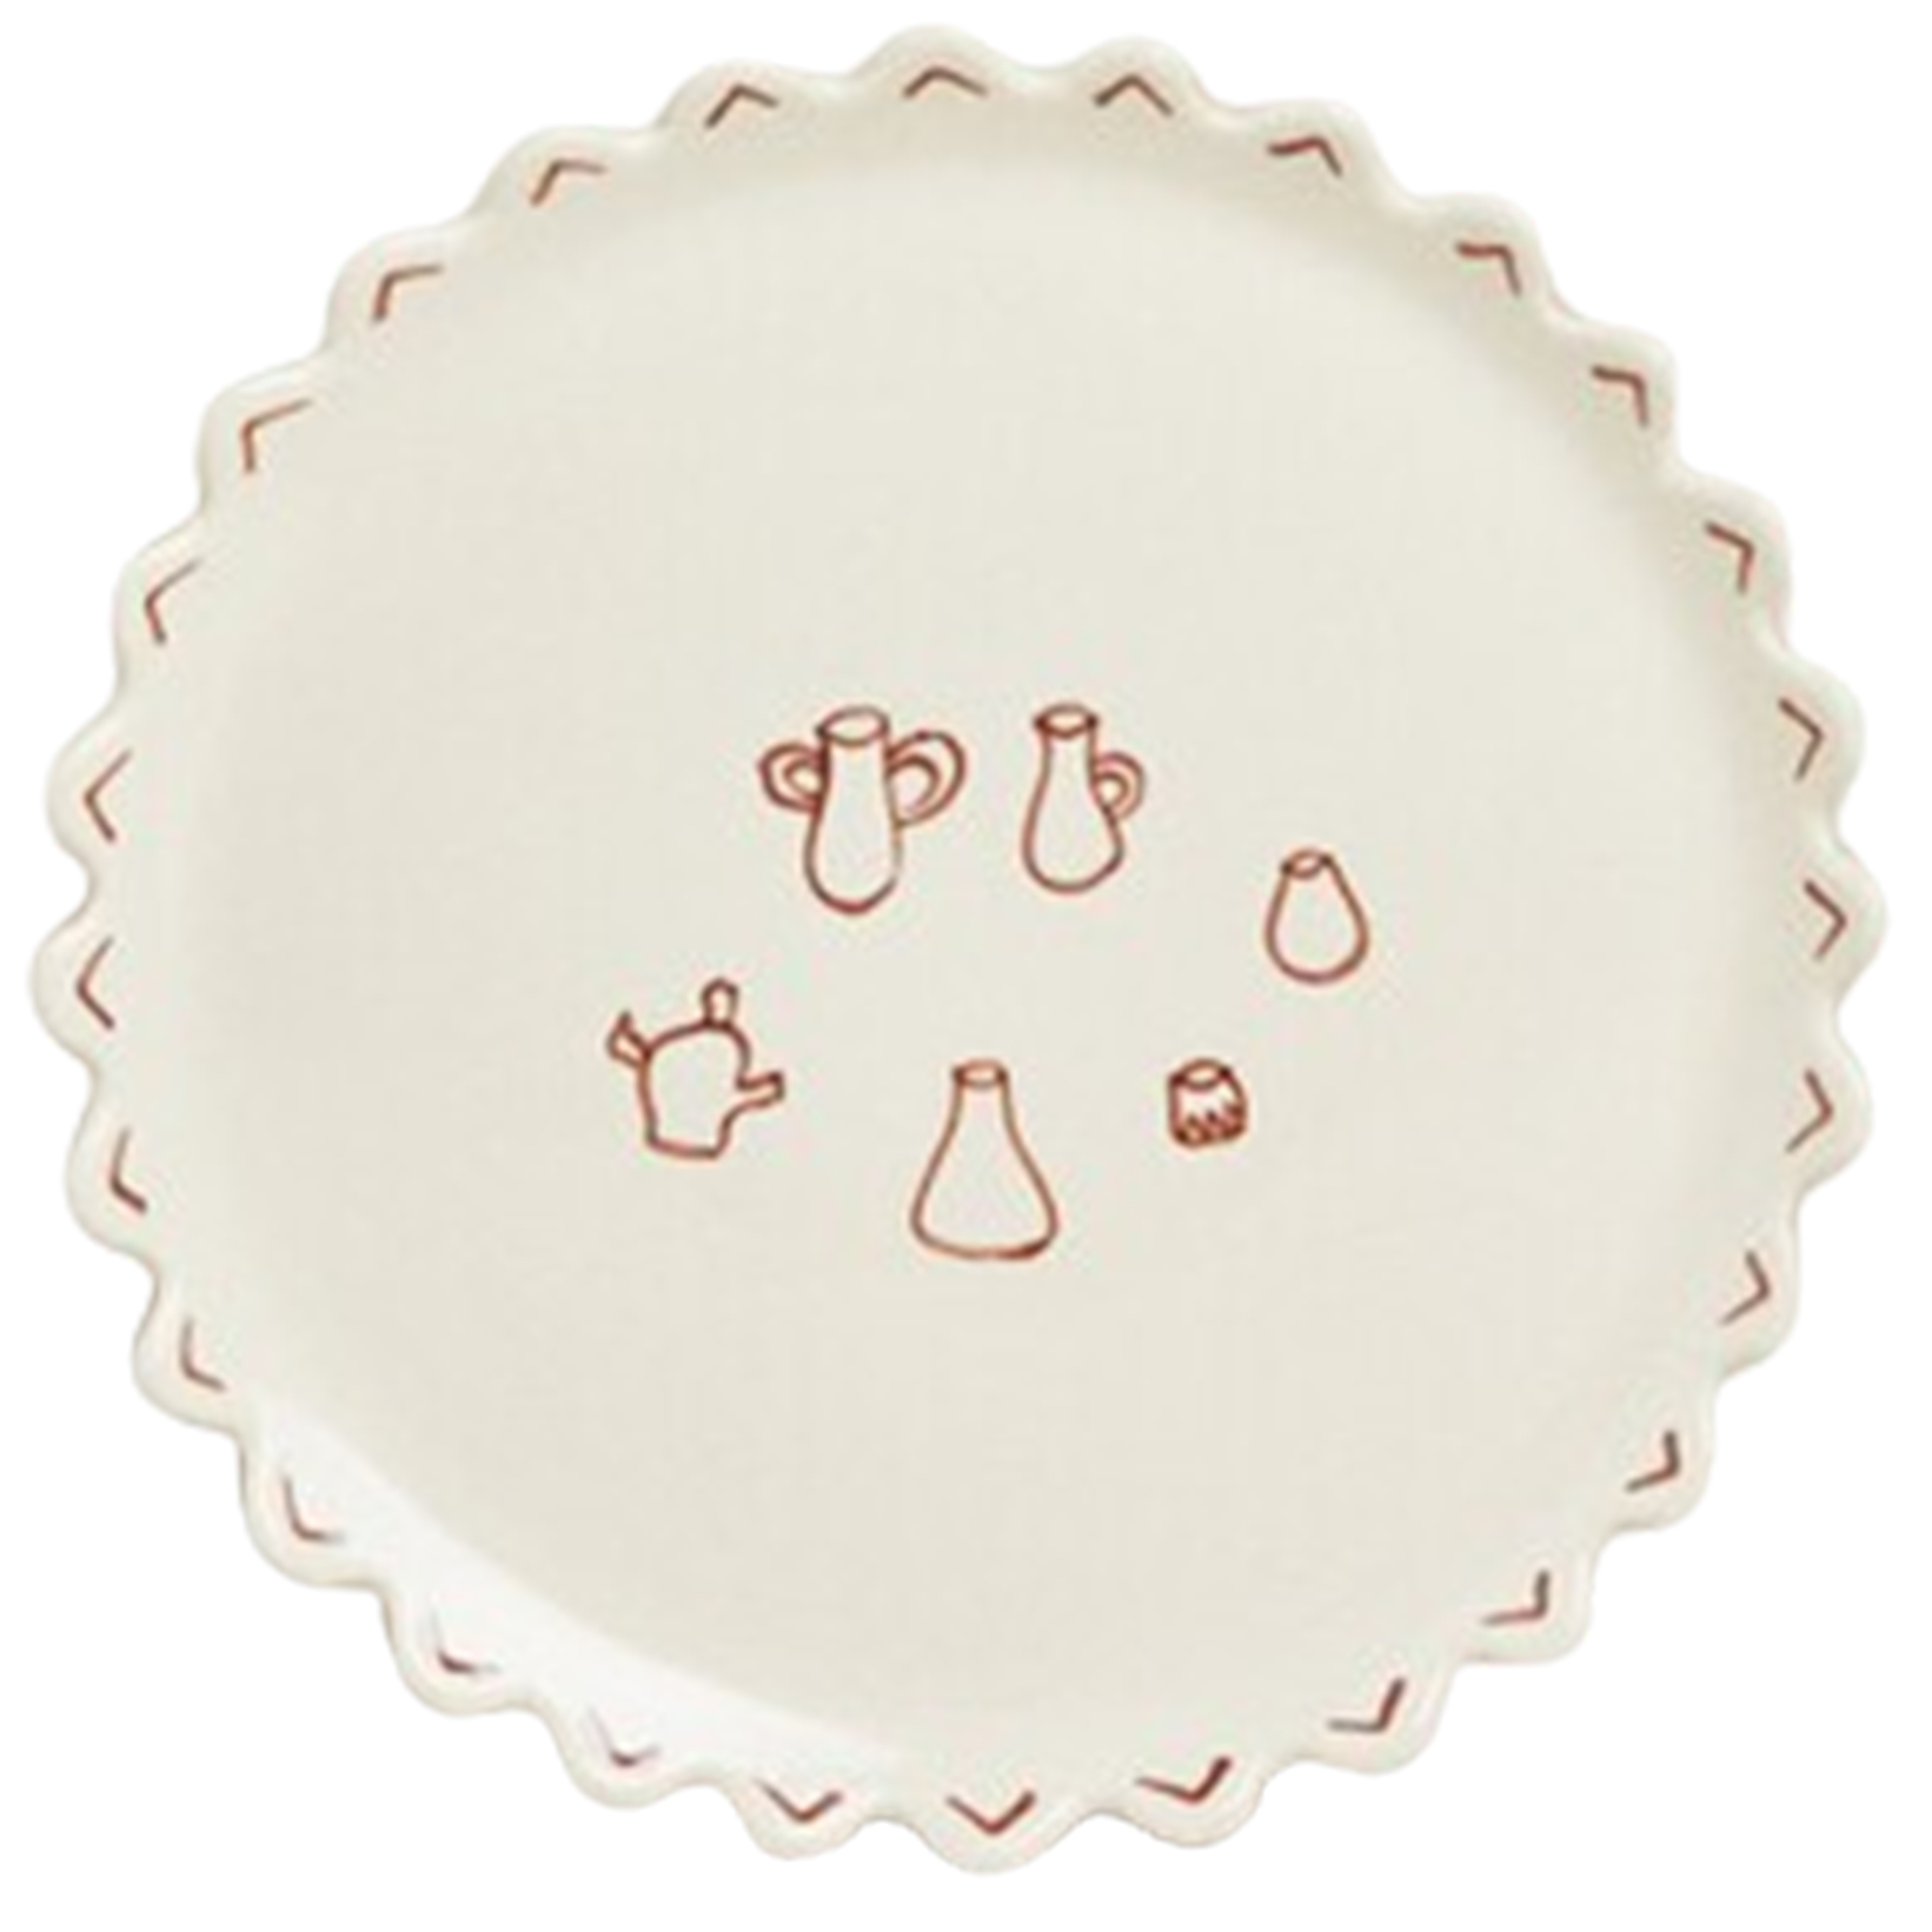 Stoneware Dessert Plate with Motifs